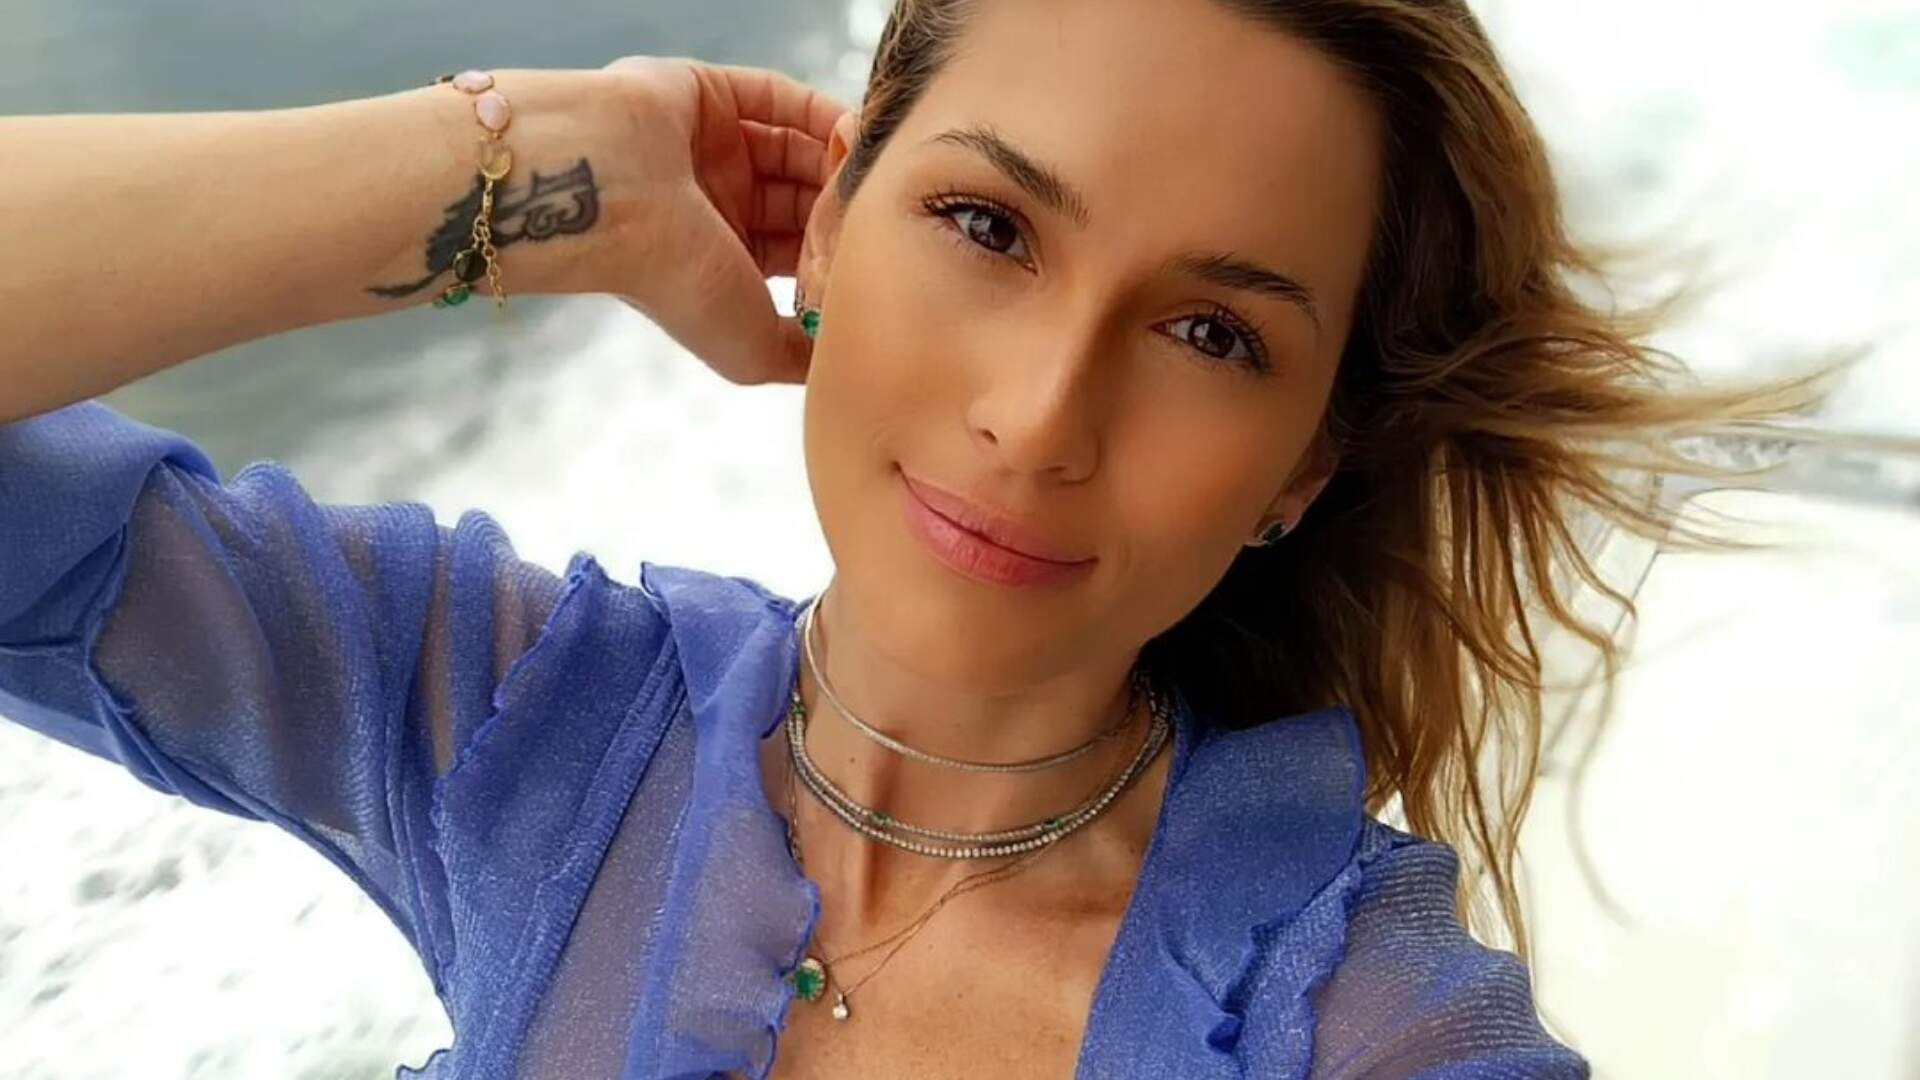 Lívia Andrade molha o fio-dental no chuveiro e deixa transparência à mostra: “Surpresinha” - Metropolitana FM